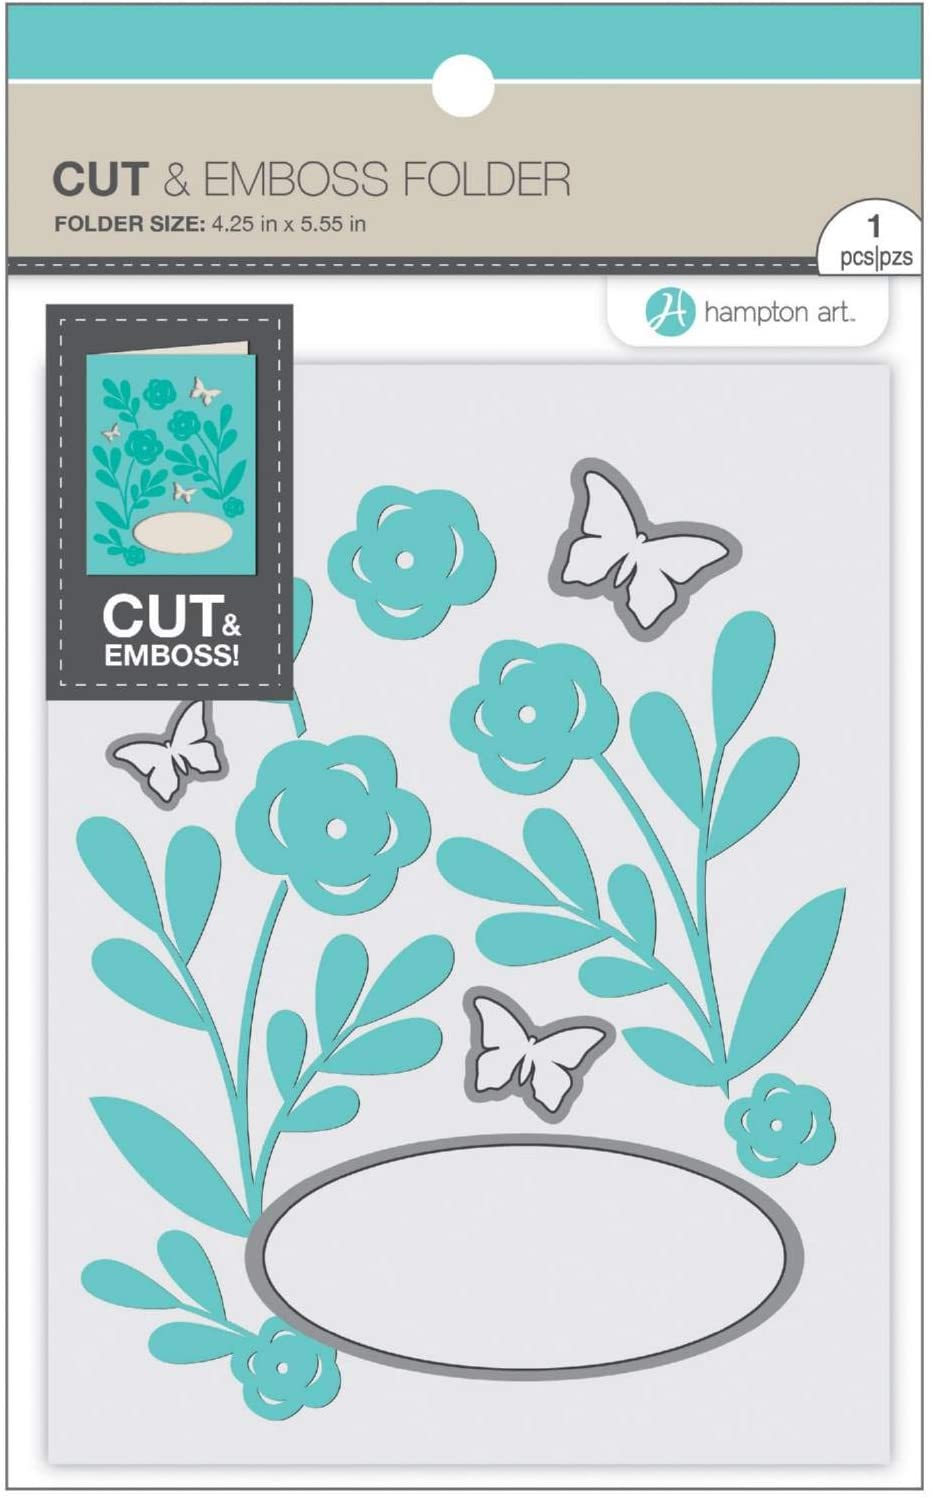 HA Cut & Emboss Folder - Butterfly Florals